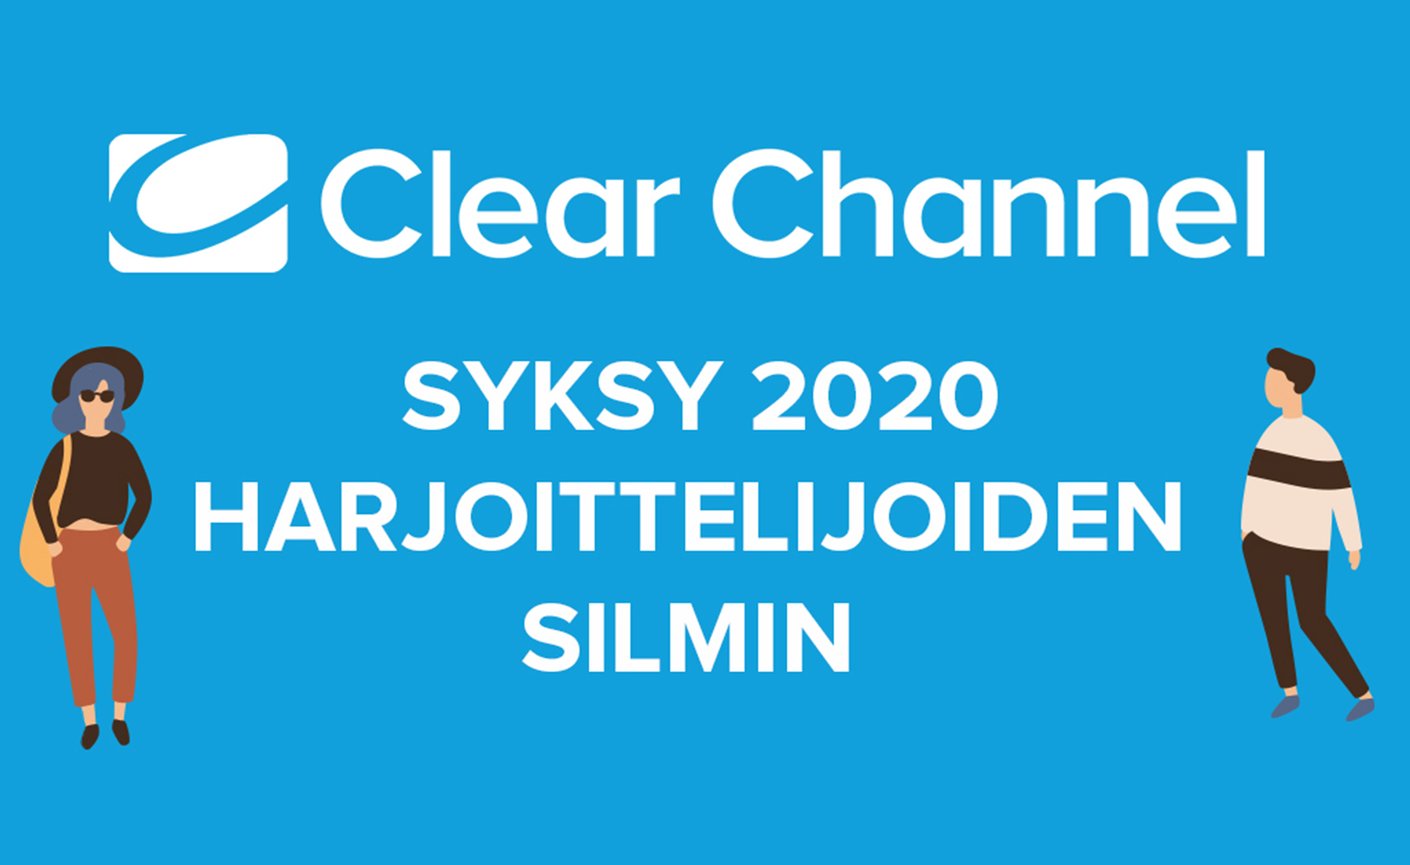 Clear Channelin syksy 2020 harjoittelijoiden silmin